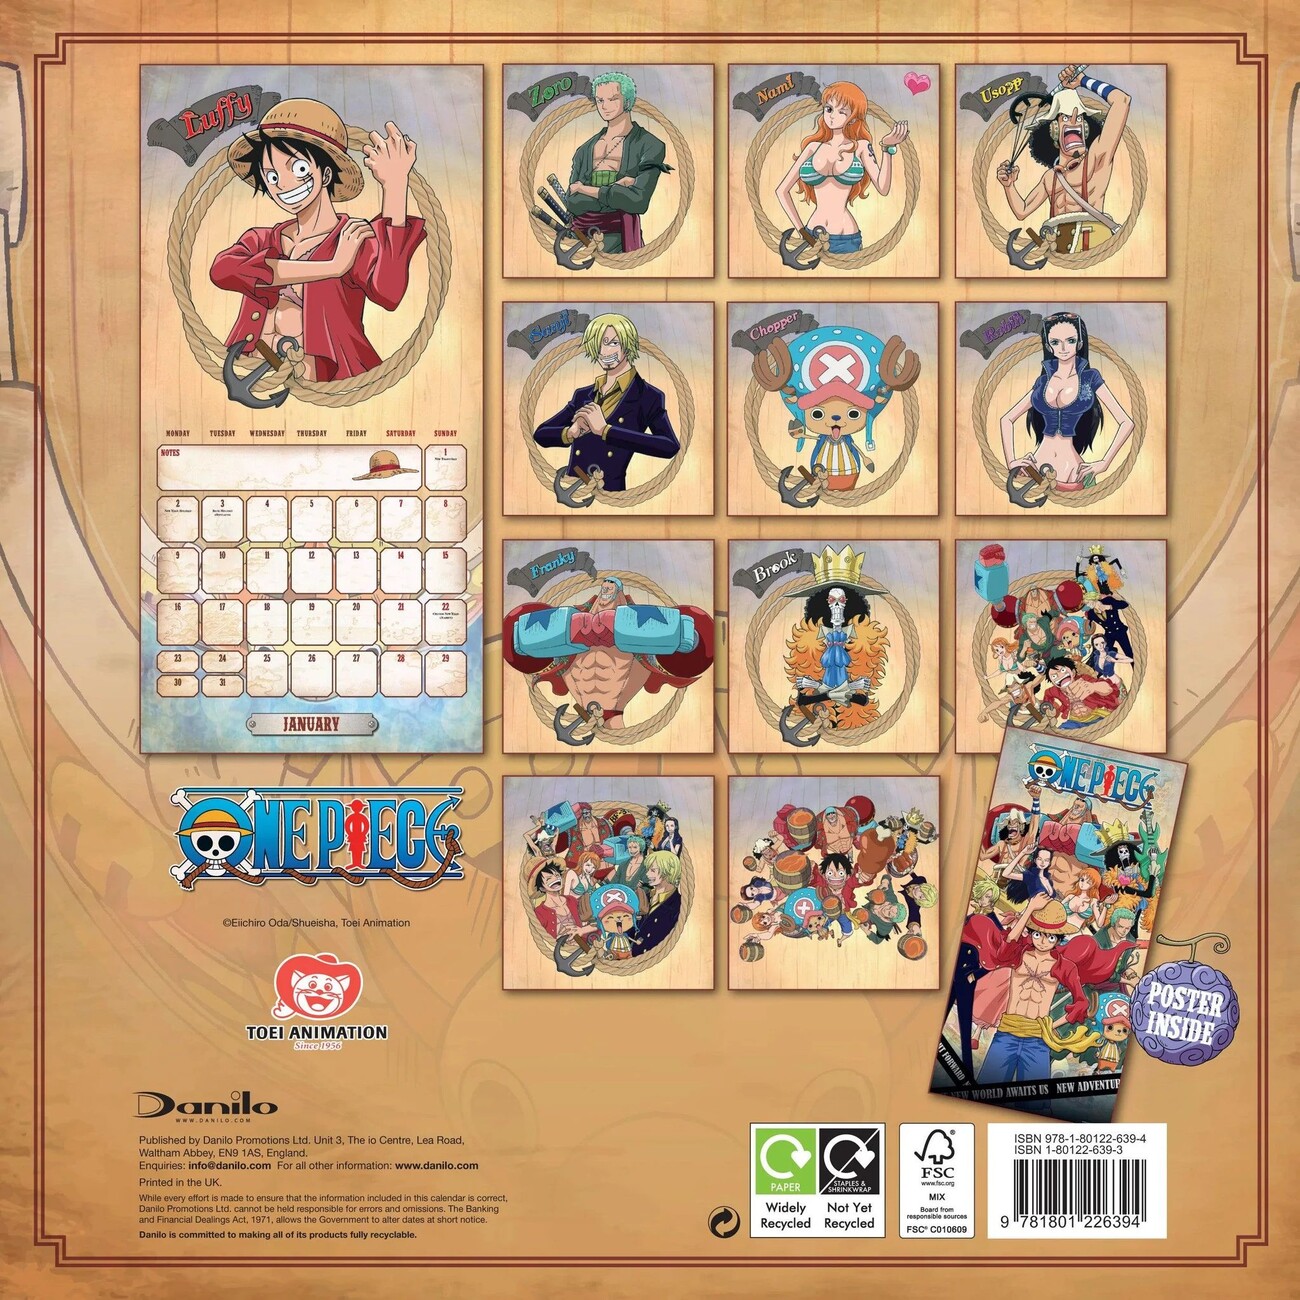 Calendário One Piece 516975 Original: Compra Online em Oferta